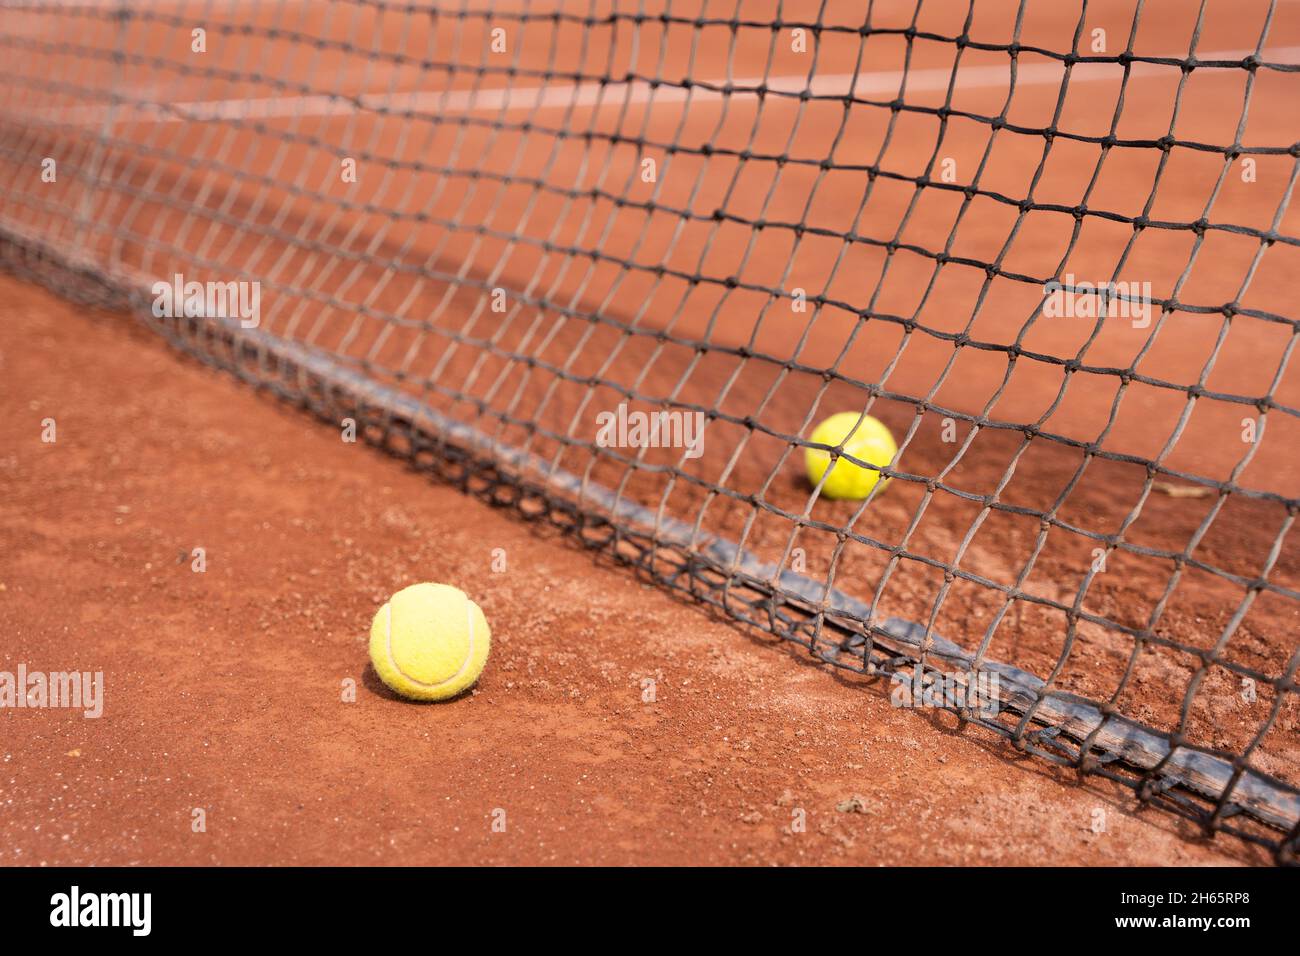 Deux balles de tennis séparées par un filet sur un terrain en terre battue.Concept d'entraînement de tournoi sportif Banque D'Images